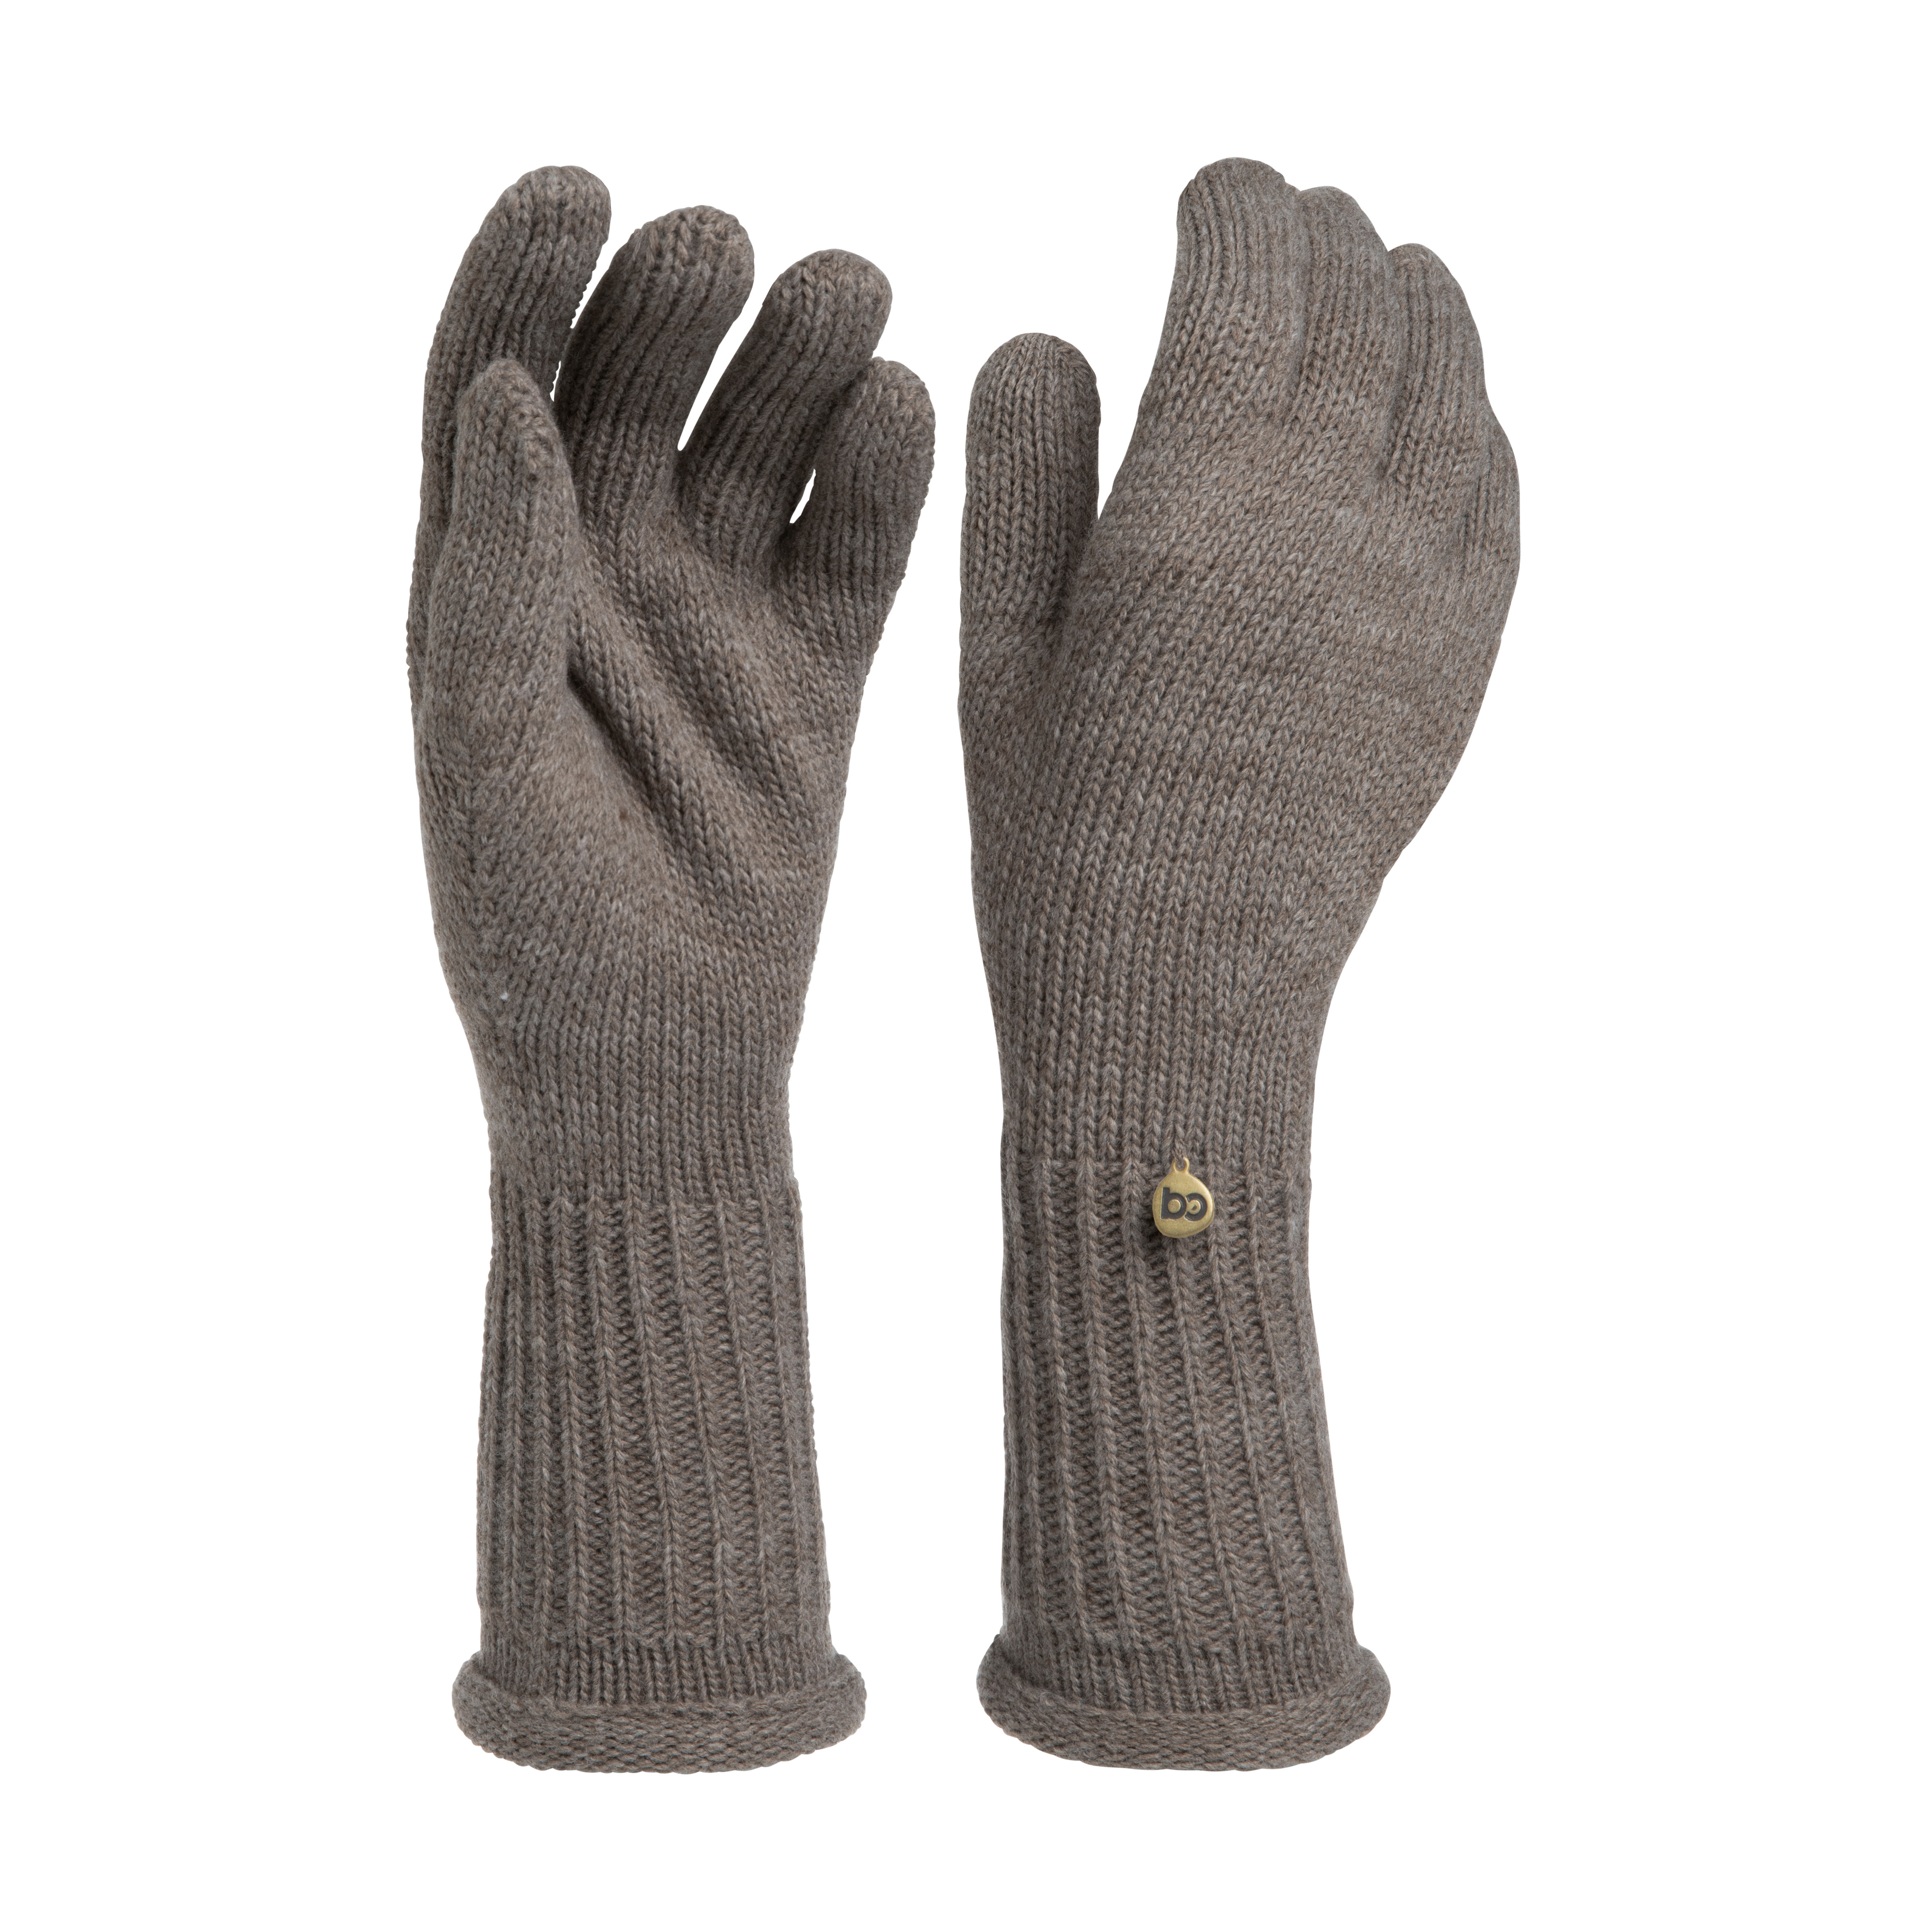 Gloves Glow hazel brown